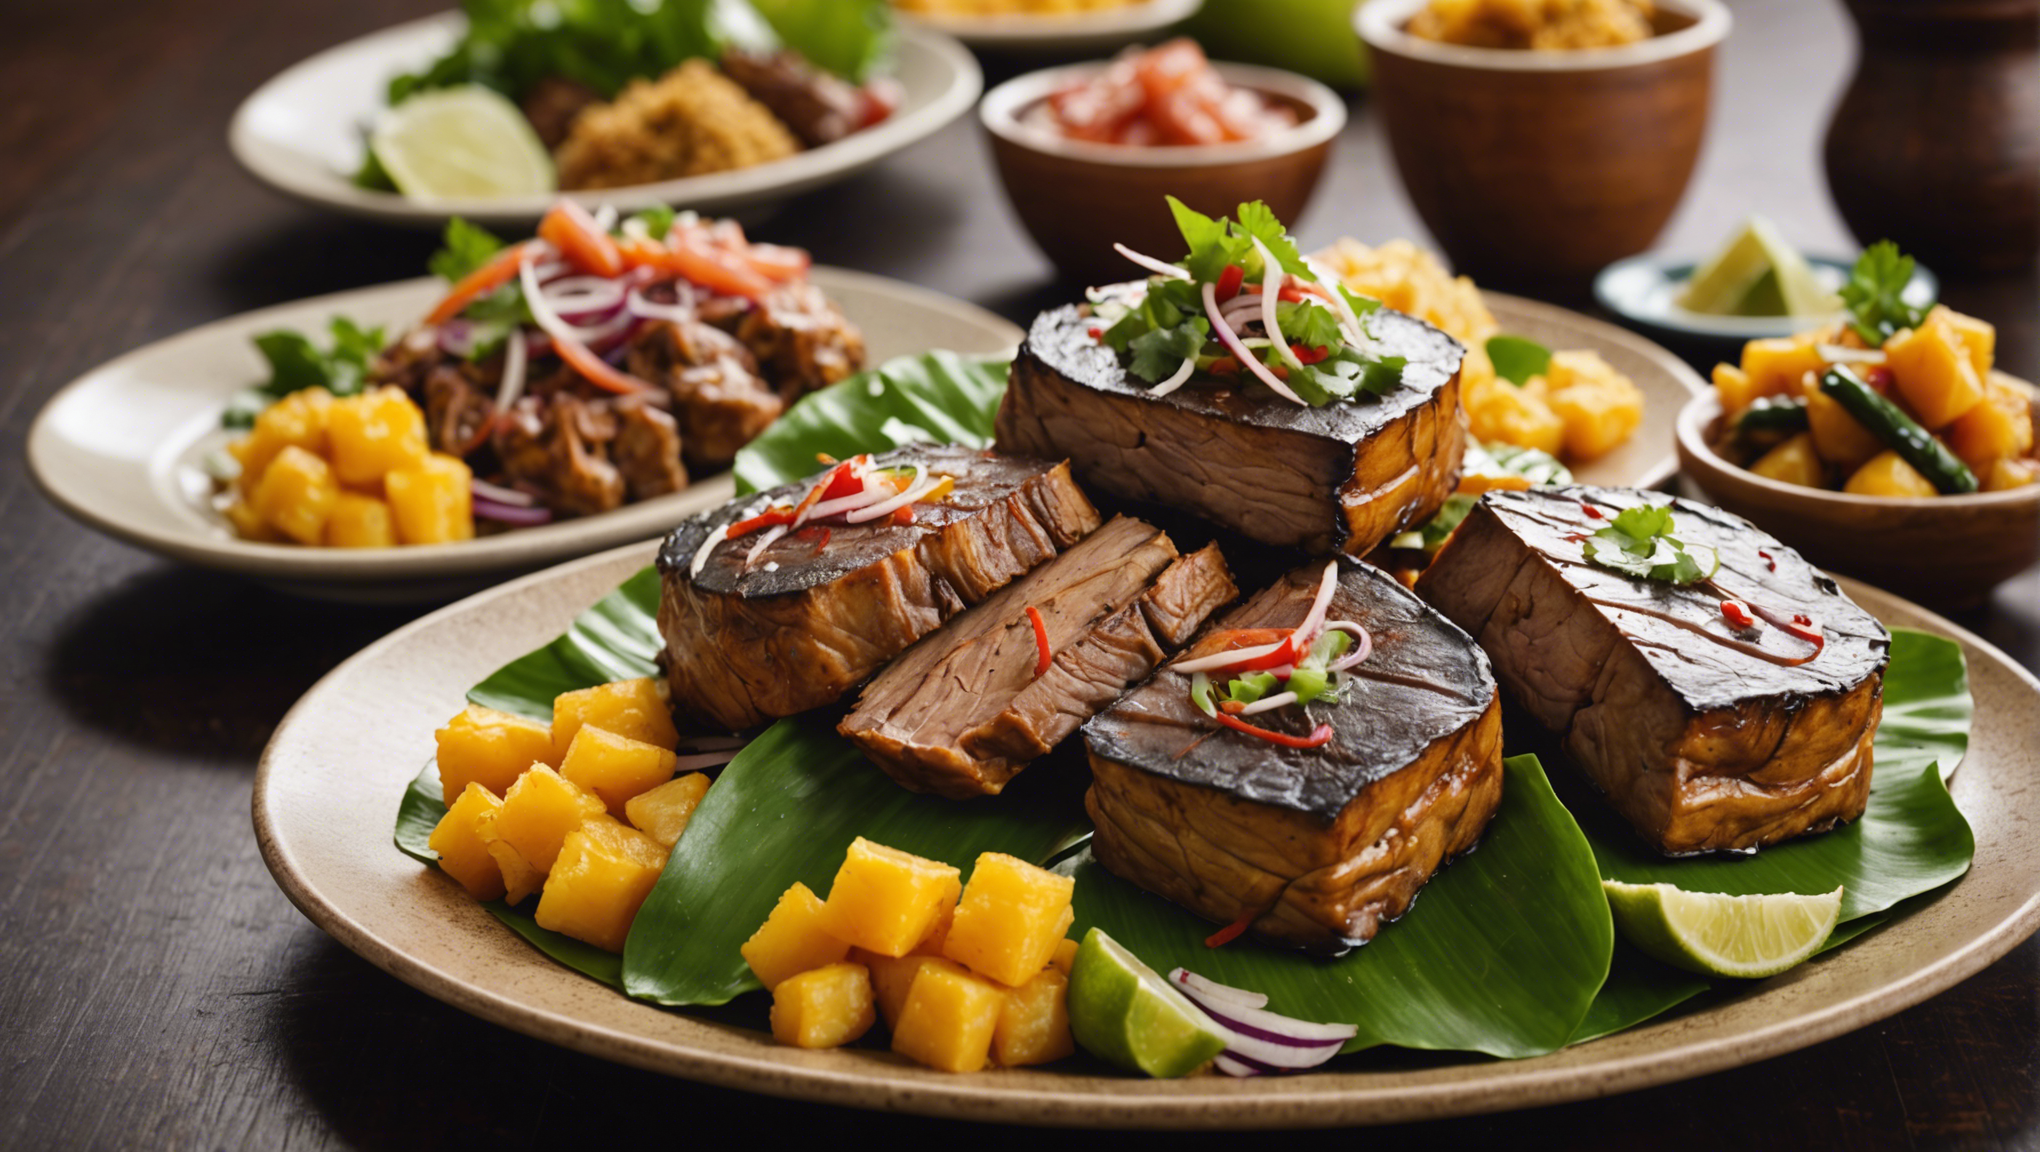 découvrez les saveurs exotiques et les délices de la gastronomie fusion de tahiti, mélange subtil de traditions polynésiennes et d'influences internationales.